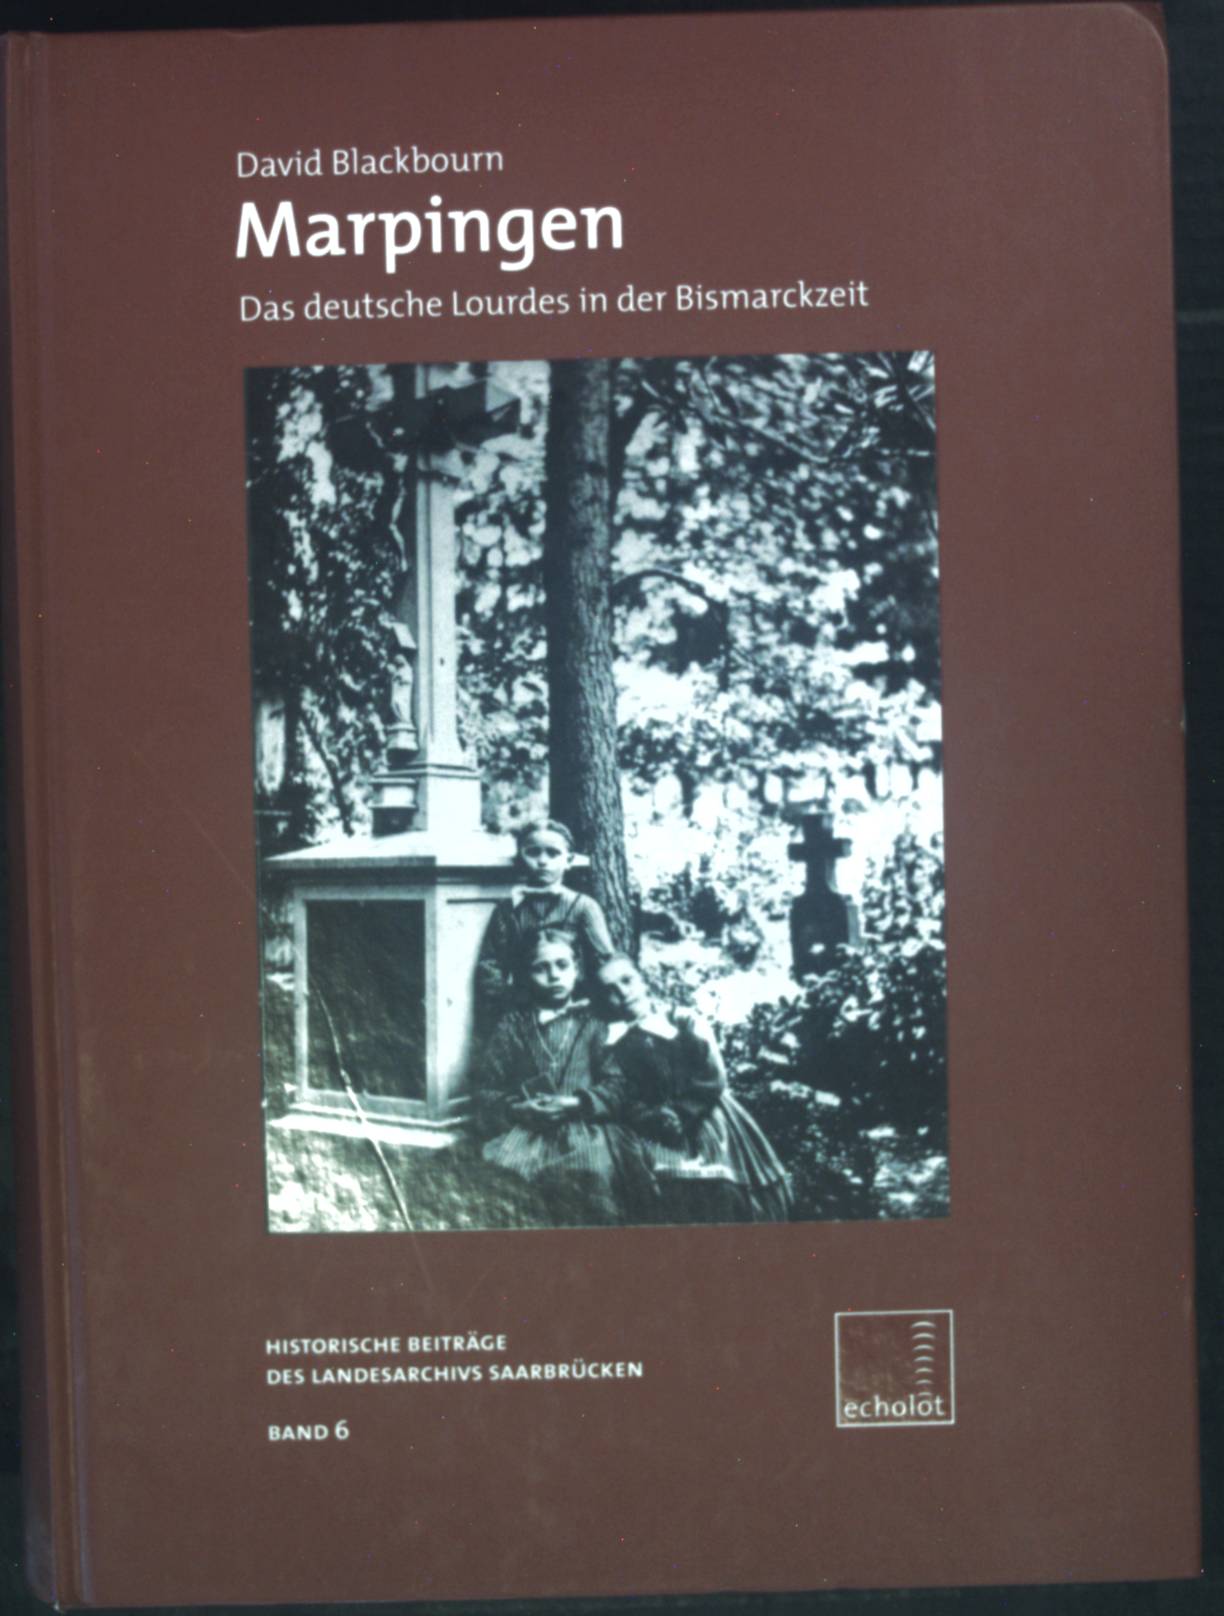 Marpingen : das deutsche Lourdes in der Bismarckzeit. Echolot ; Bd. 6 - Blackbourn, David